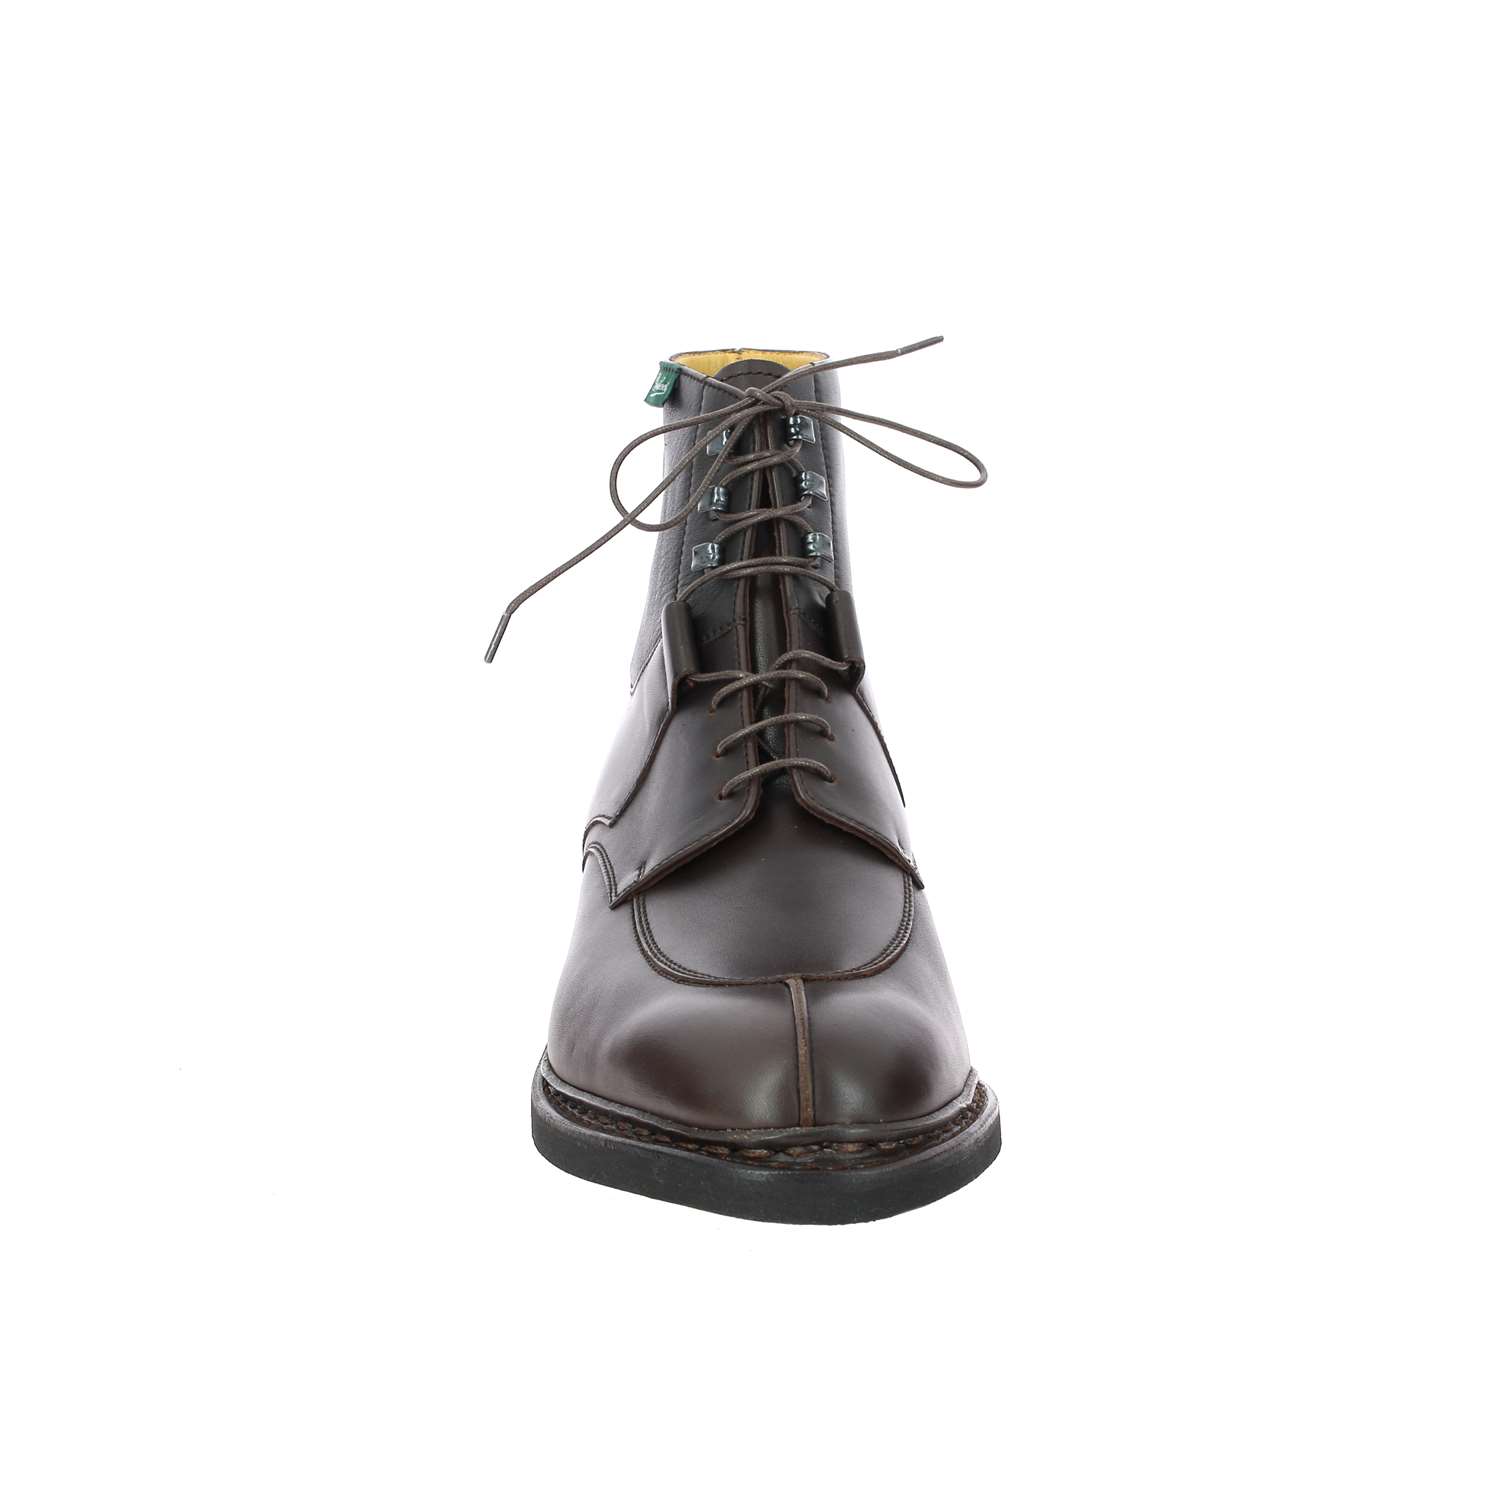 03 - BEAUMONT - PARABOOT - Boots et bottines - Cuir